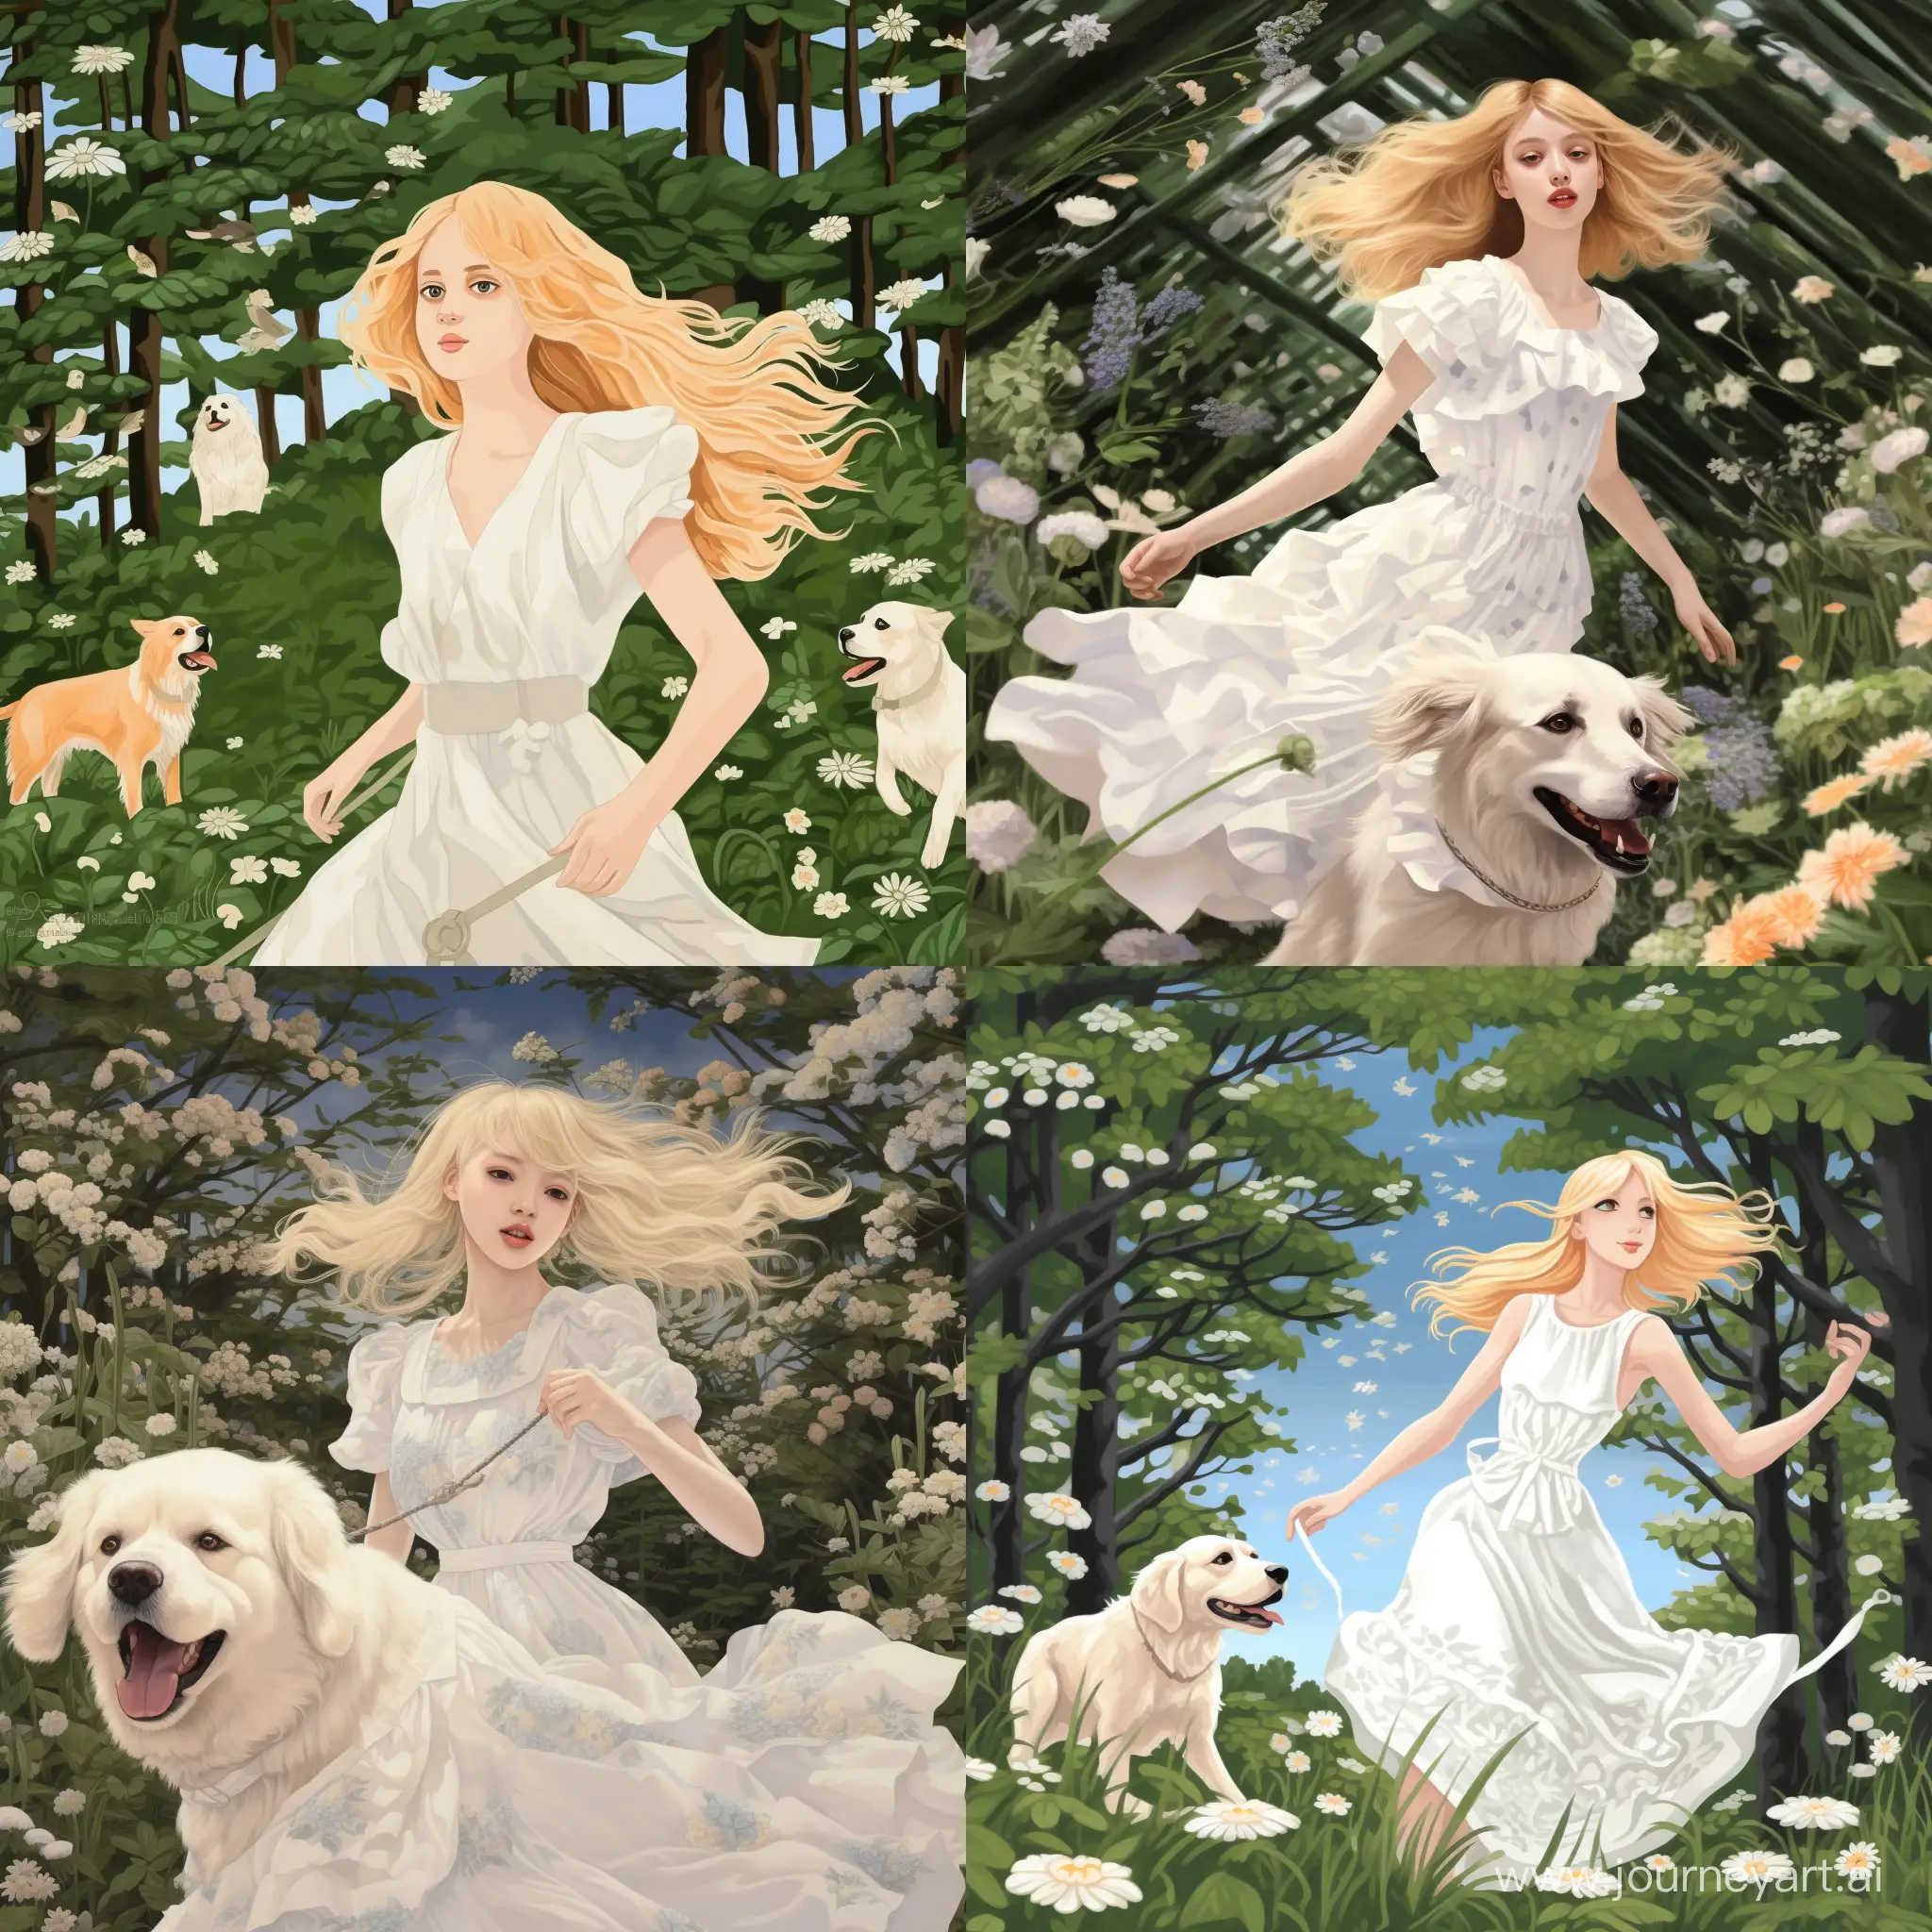 Девушка в светлом лесу, вокруг нее мелкие цветы белого цвета. На ней белое платье и блондинистые волосы, рядом с ней бежит собака белая пушистая 